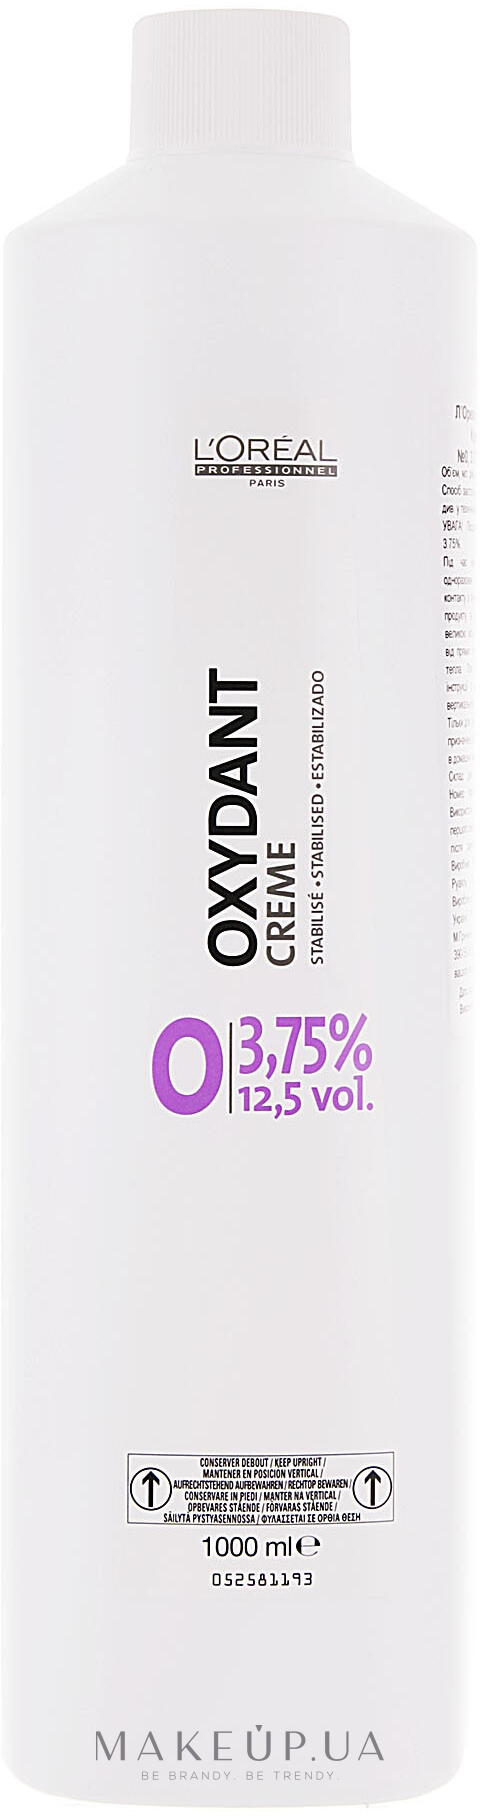 Крем-окислювач - L'Oreal Professionnel Oxydant 0 (3,75%) — фото 1000ml